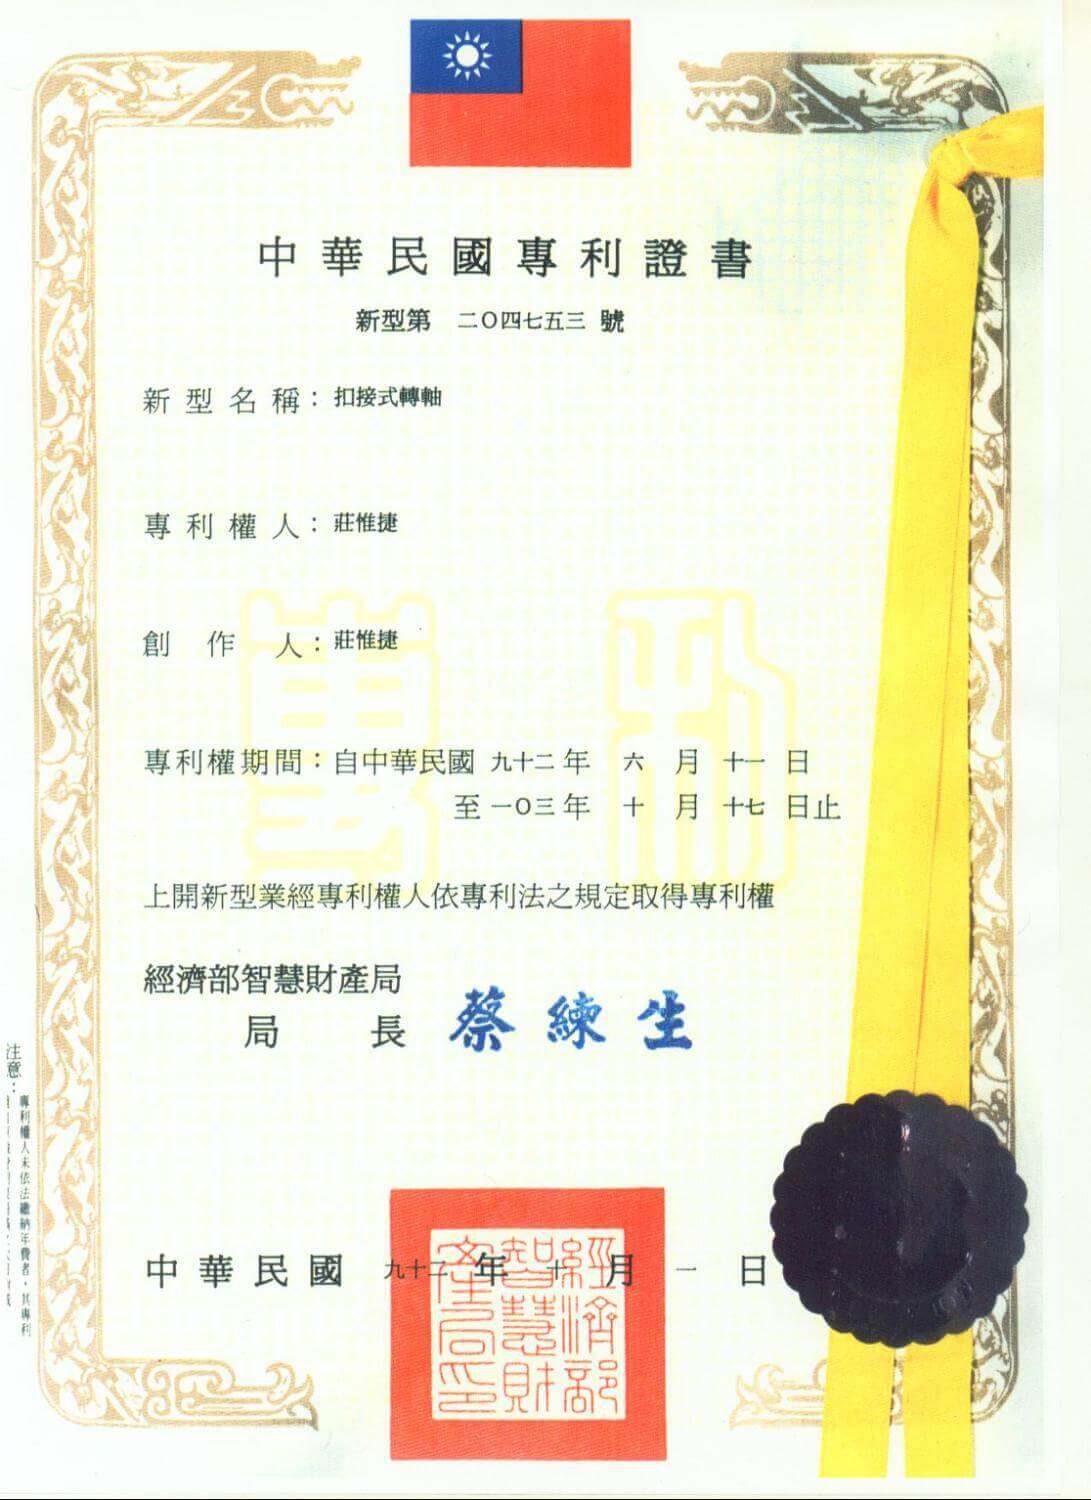 Chienfu-Tec CNC patents in Taiwan-5